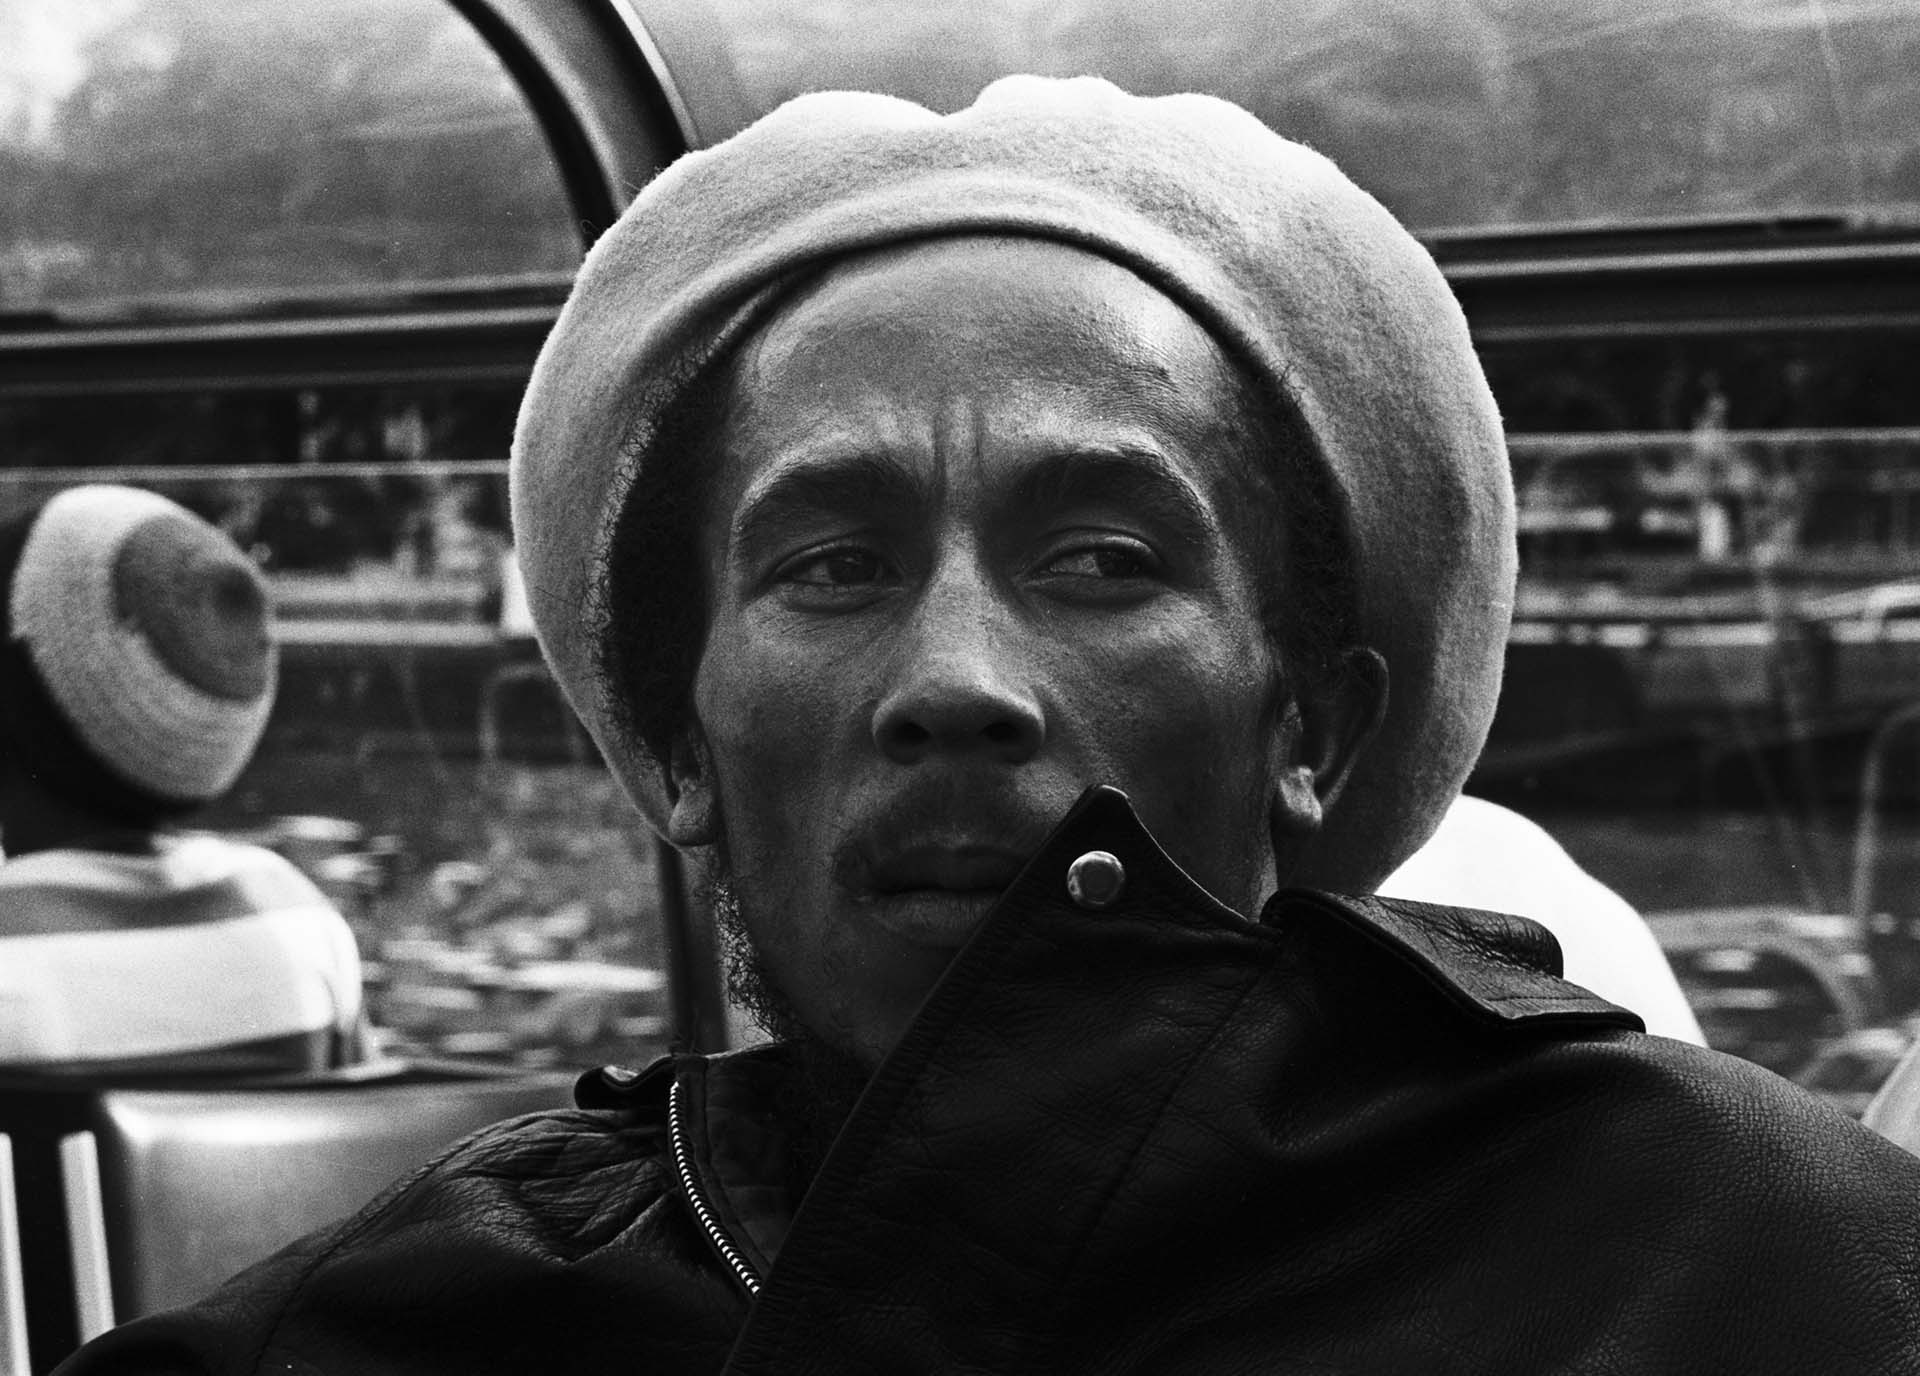 El norteamericano Roger Steffens revela los detalles más importantes de la vida y muerte de Bob Marley en el libro “Tanto que contar”